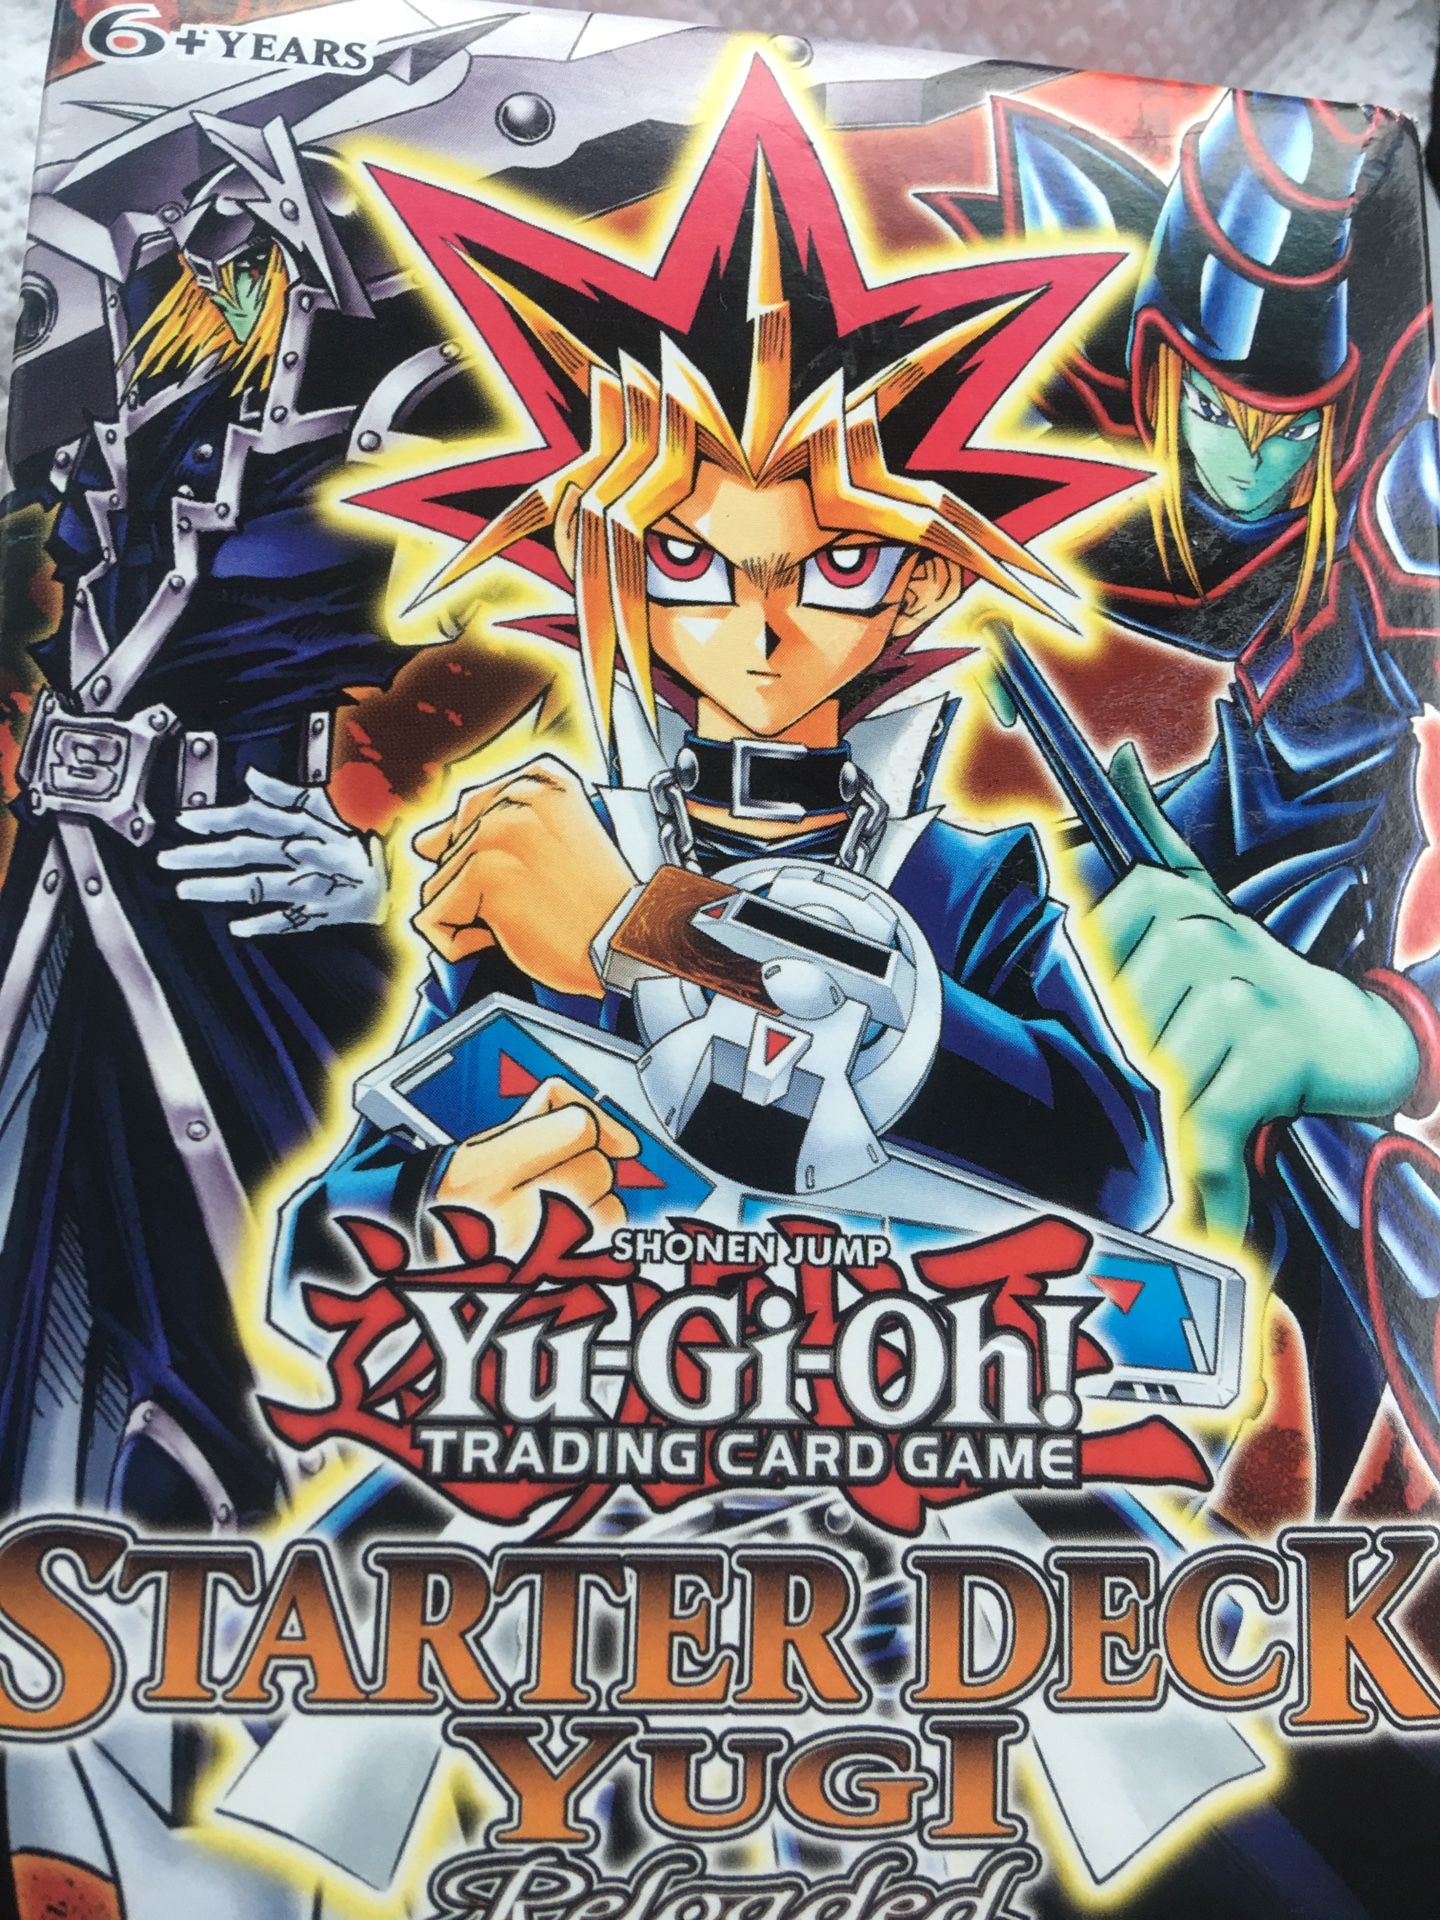 Starter deck yugi yugioh